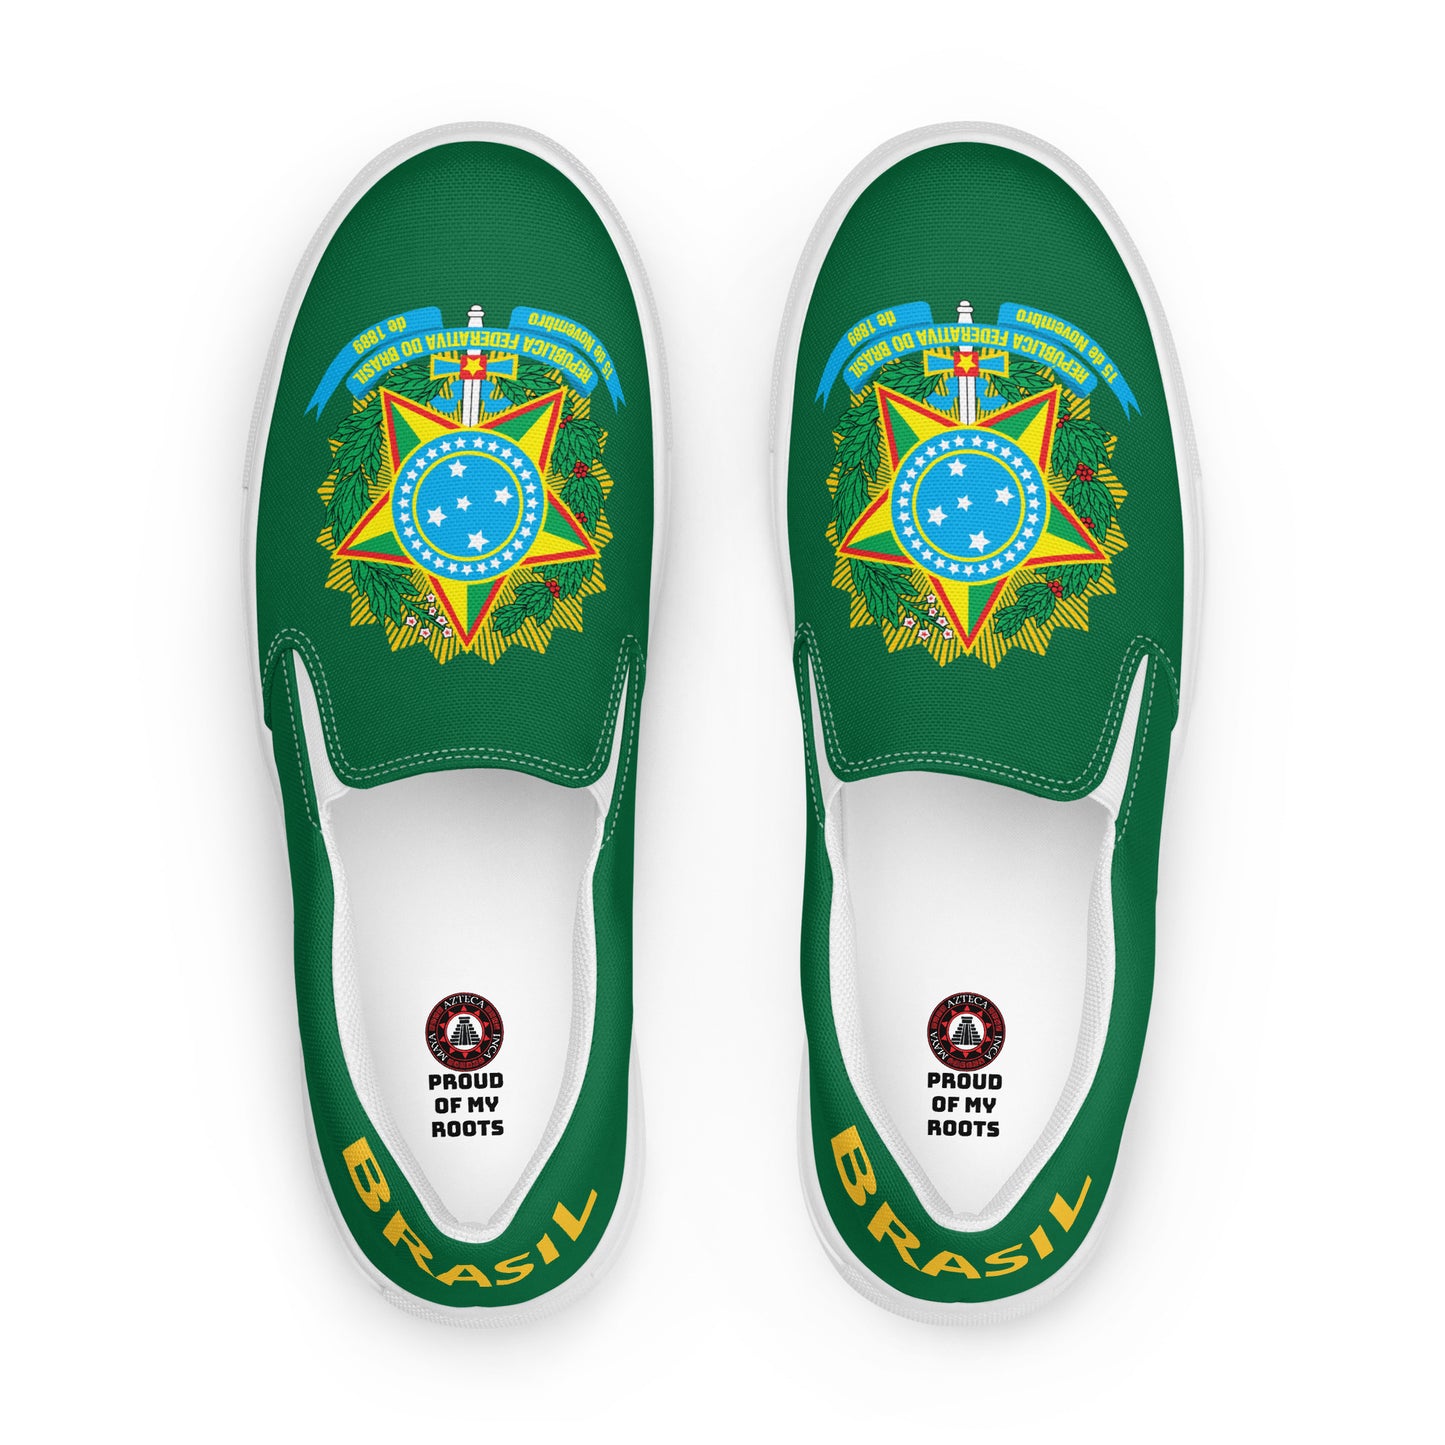 Brasil - Men - Green - Slip-on shoes